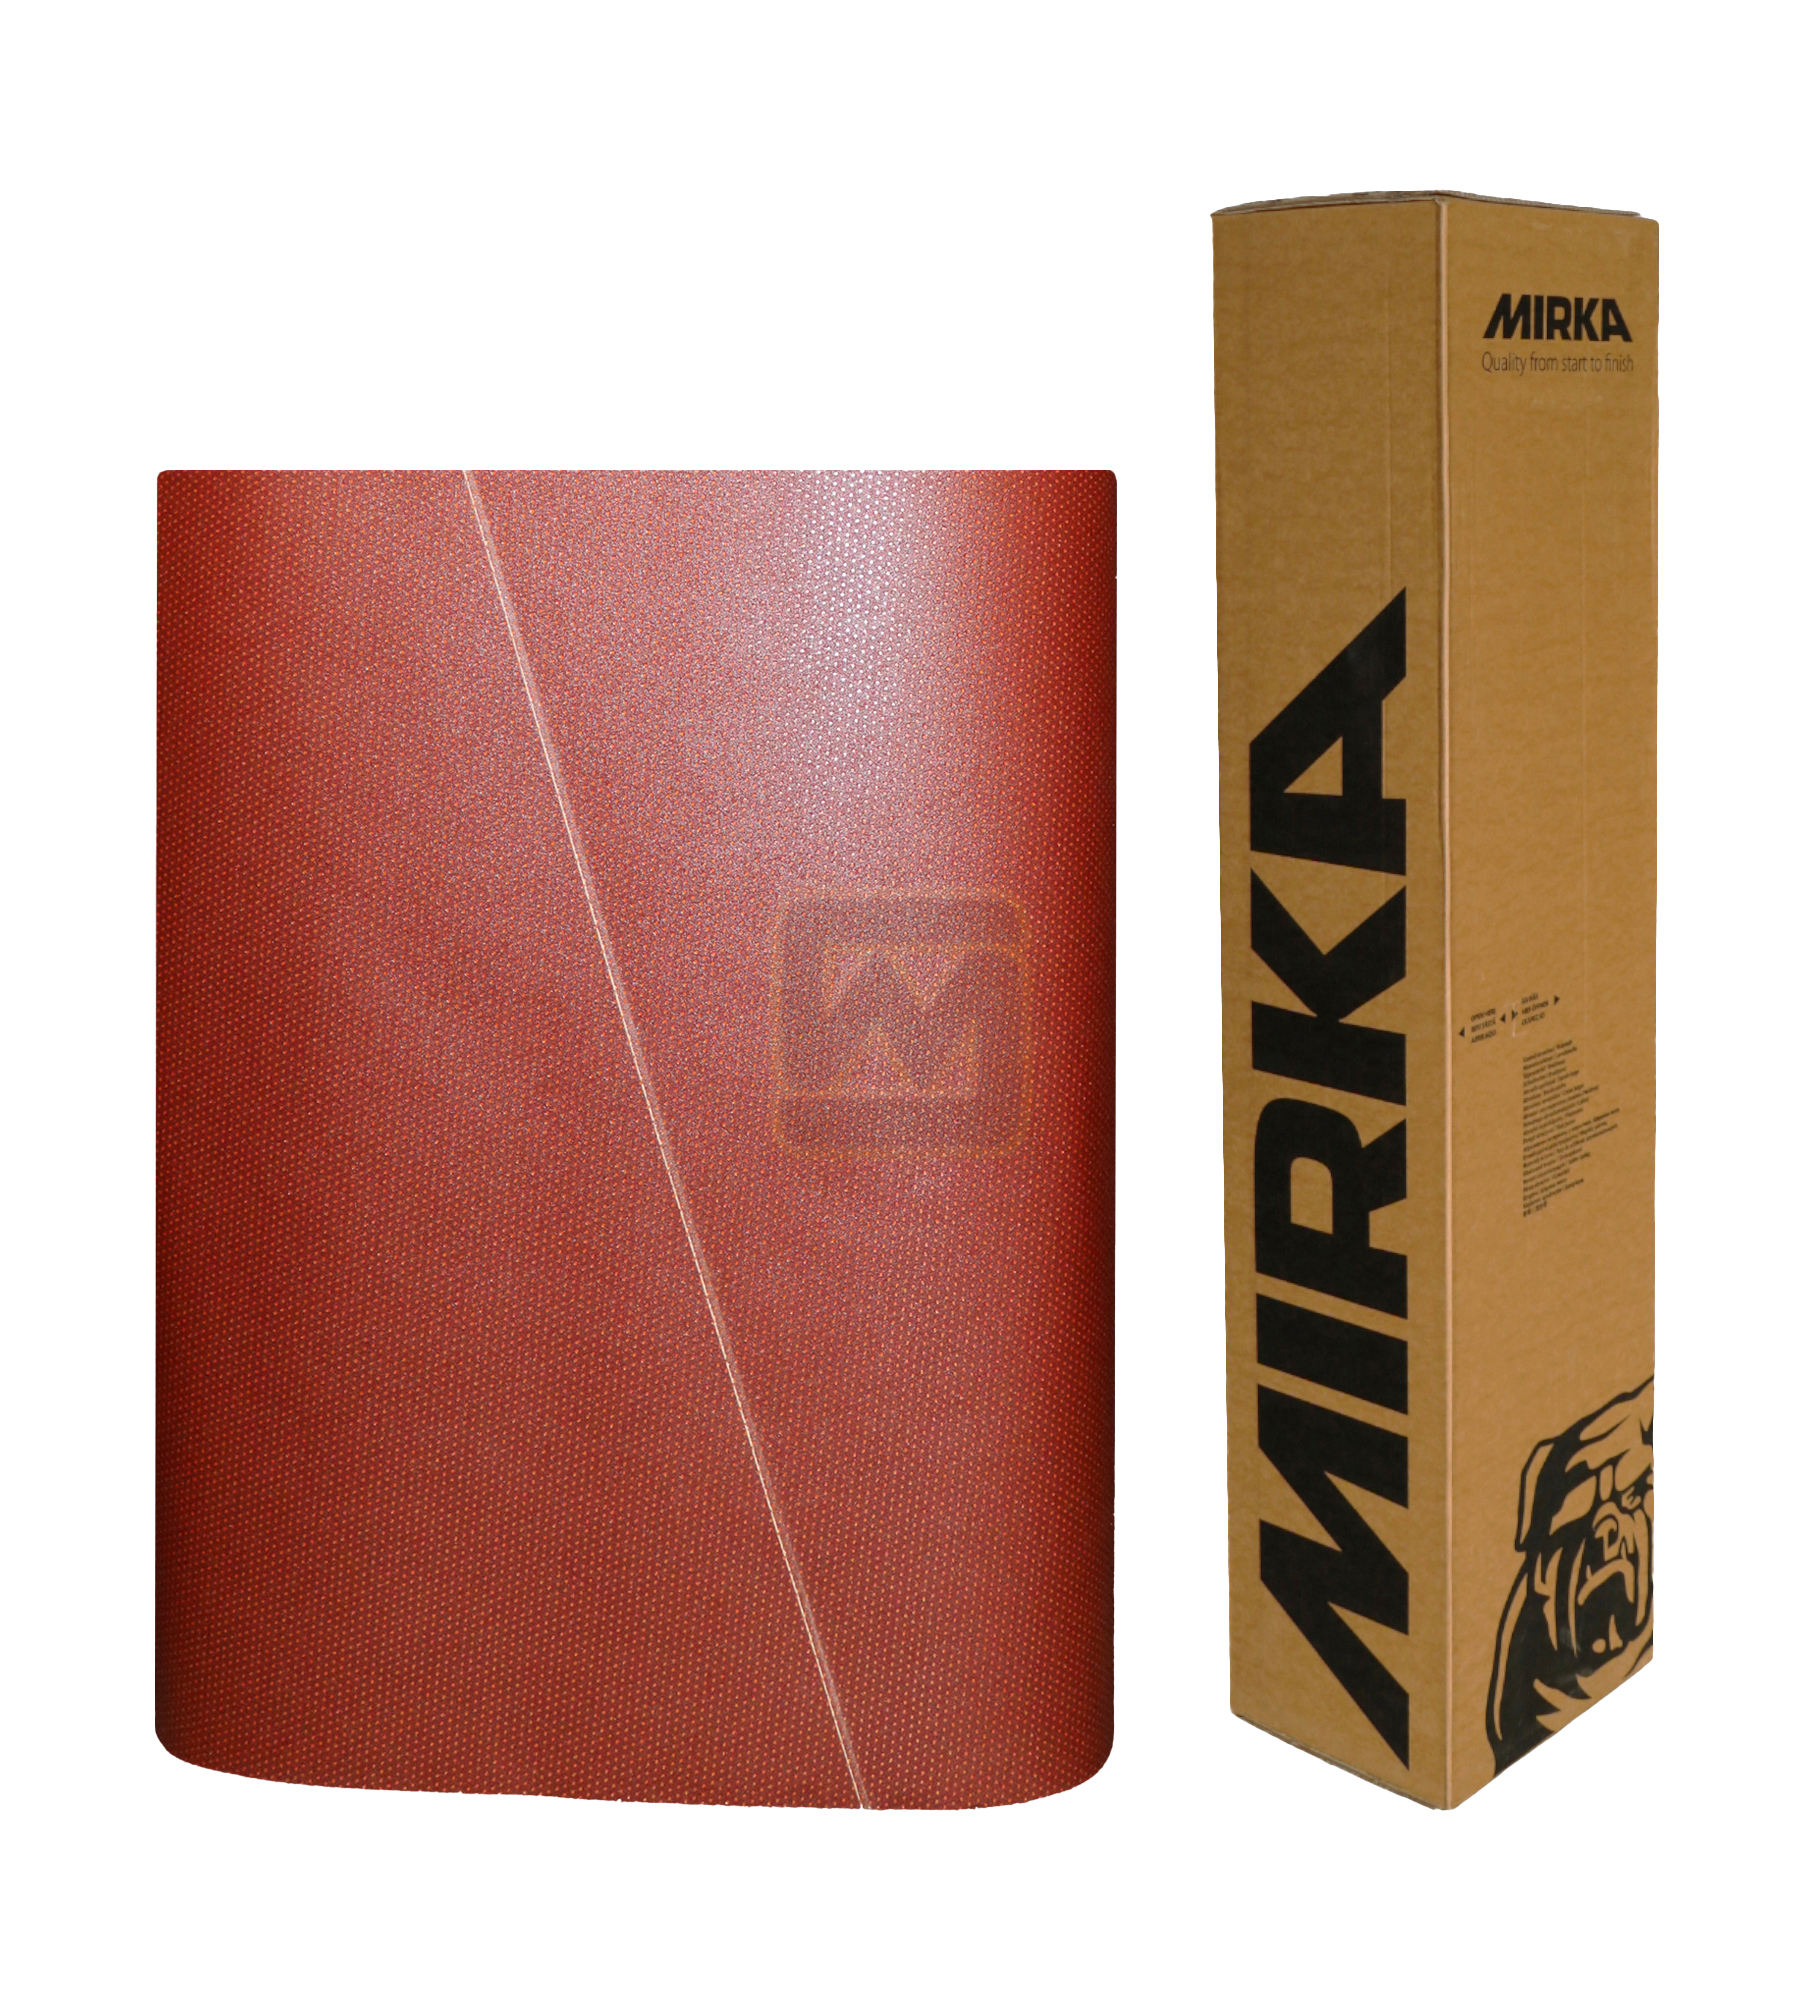 Abbildung Mirka Ultimax 1120x2000mm Breitband mit Verpackung.